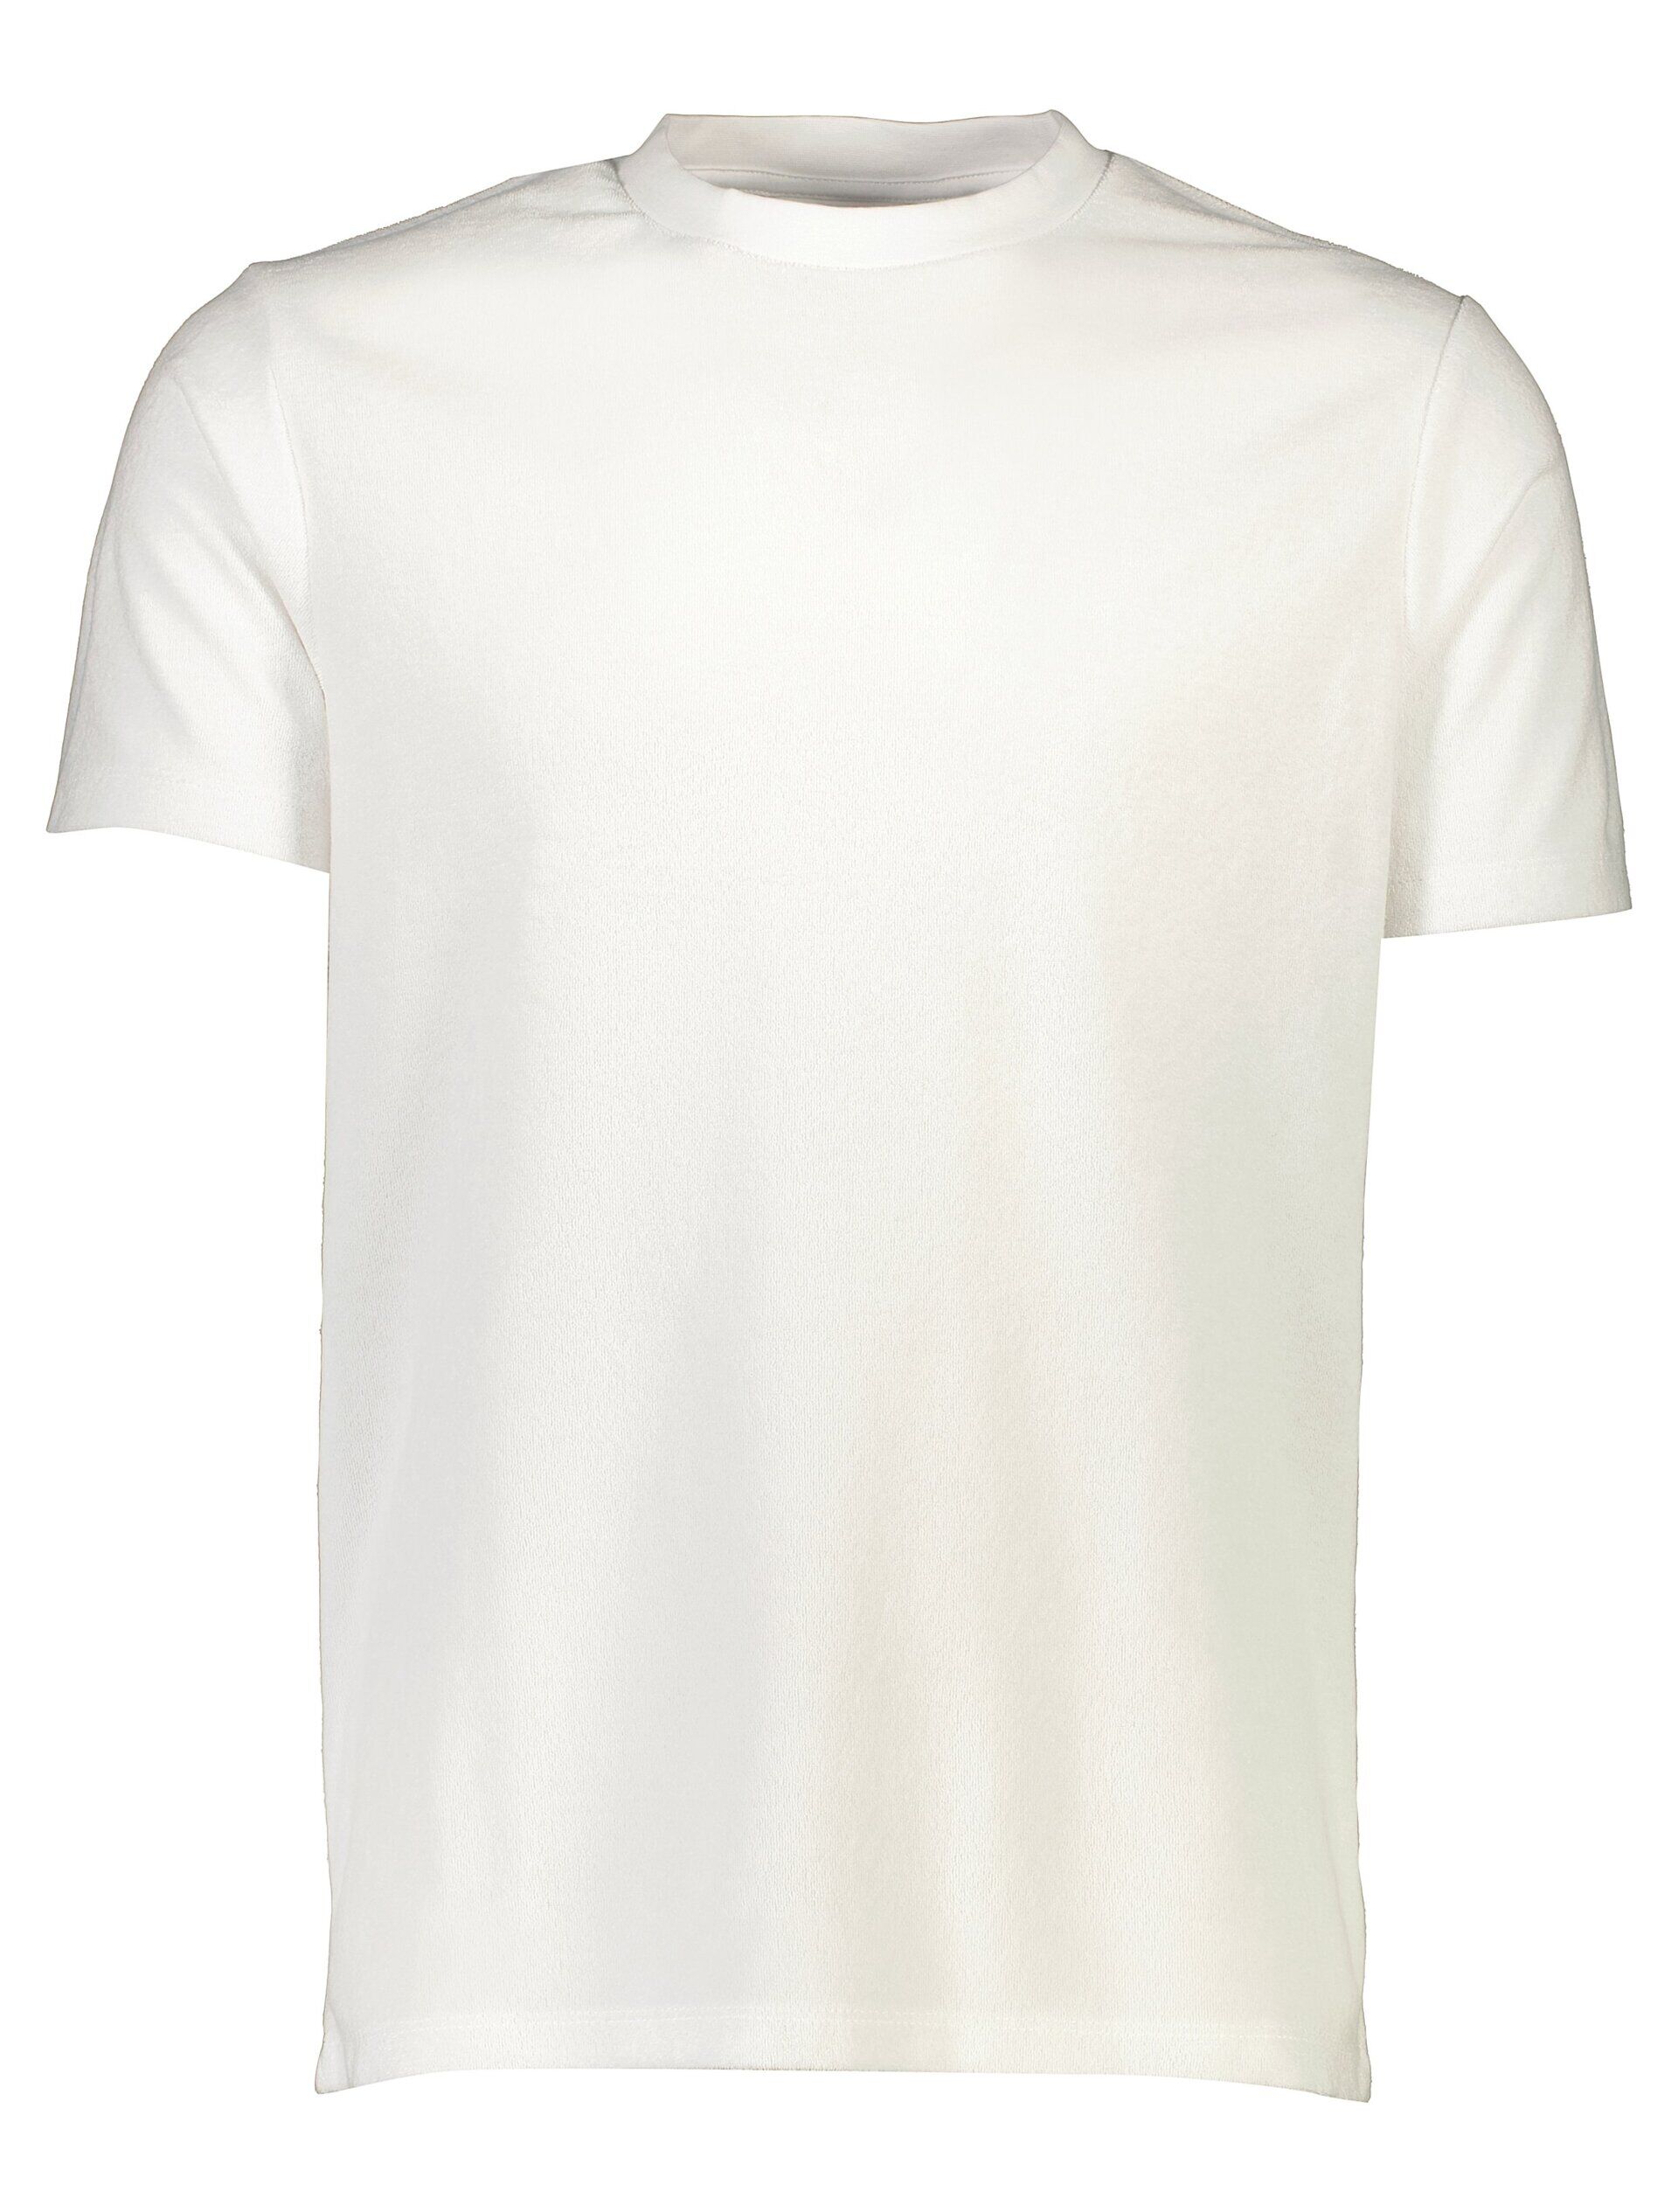 T-shirt T-shirt Weiss 30-400260